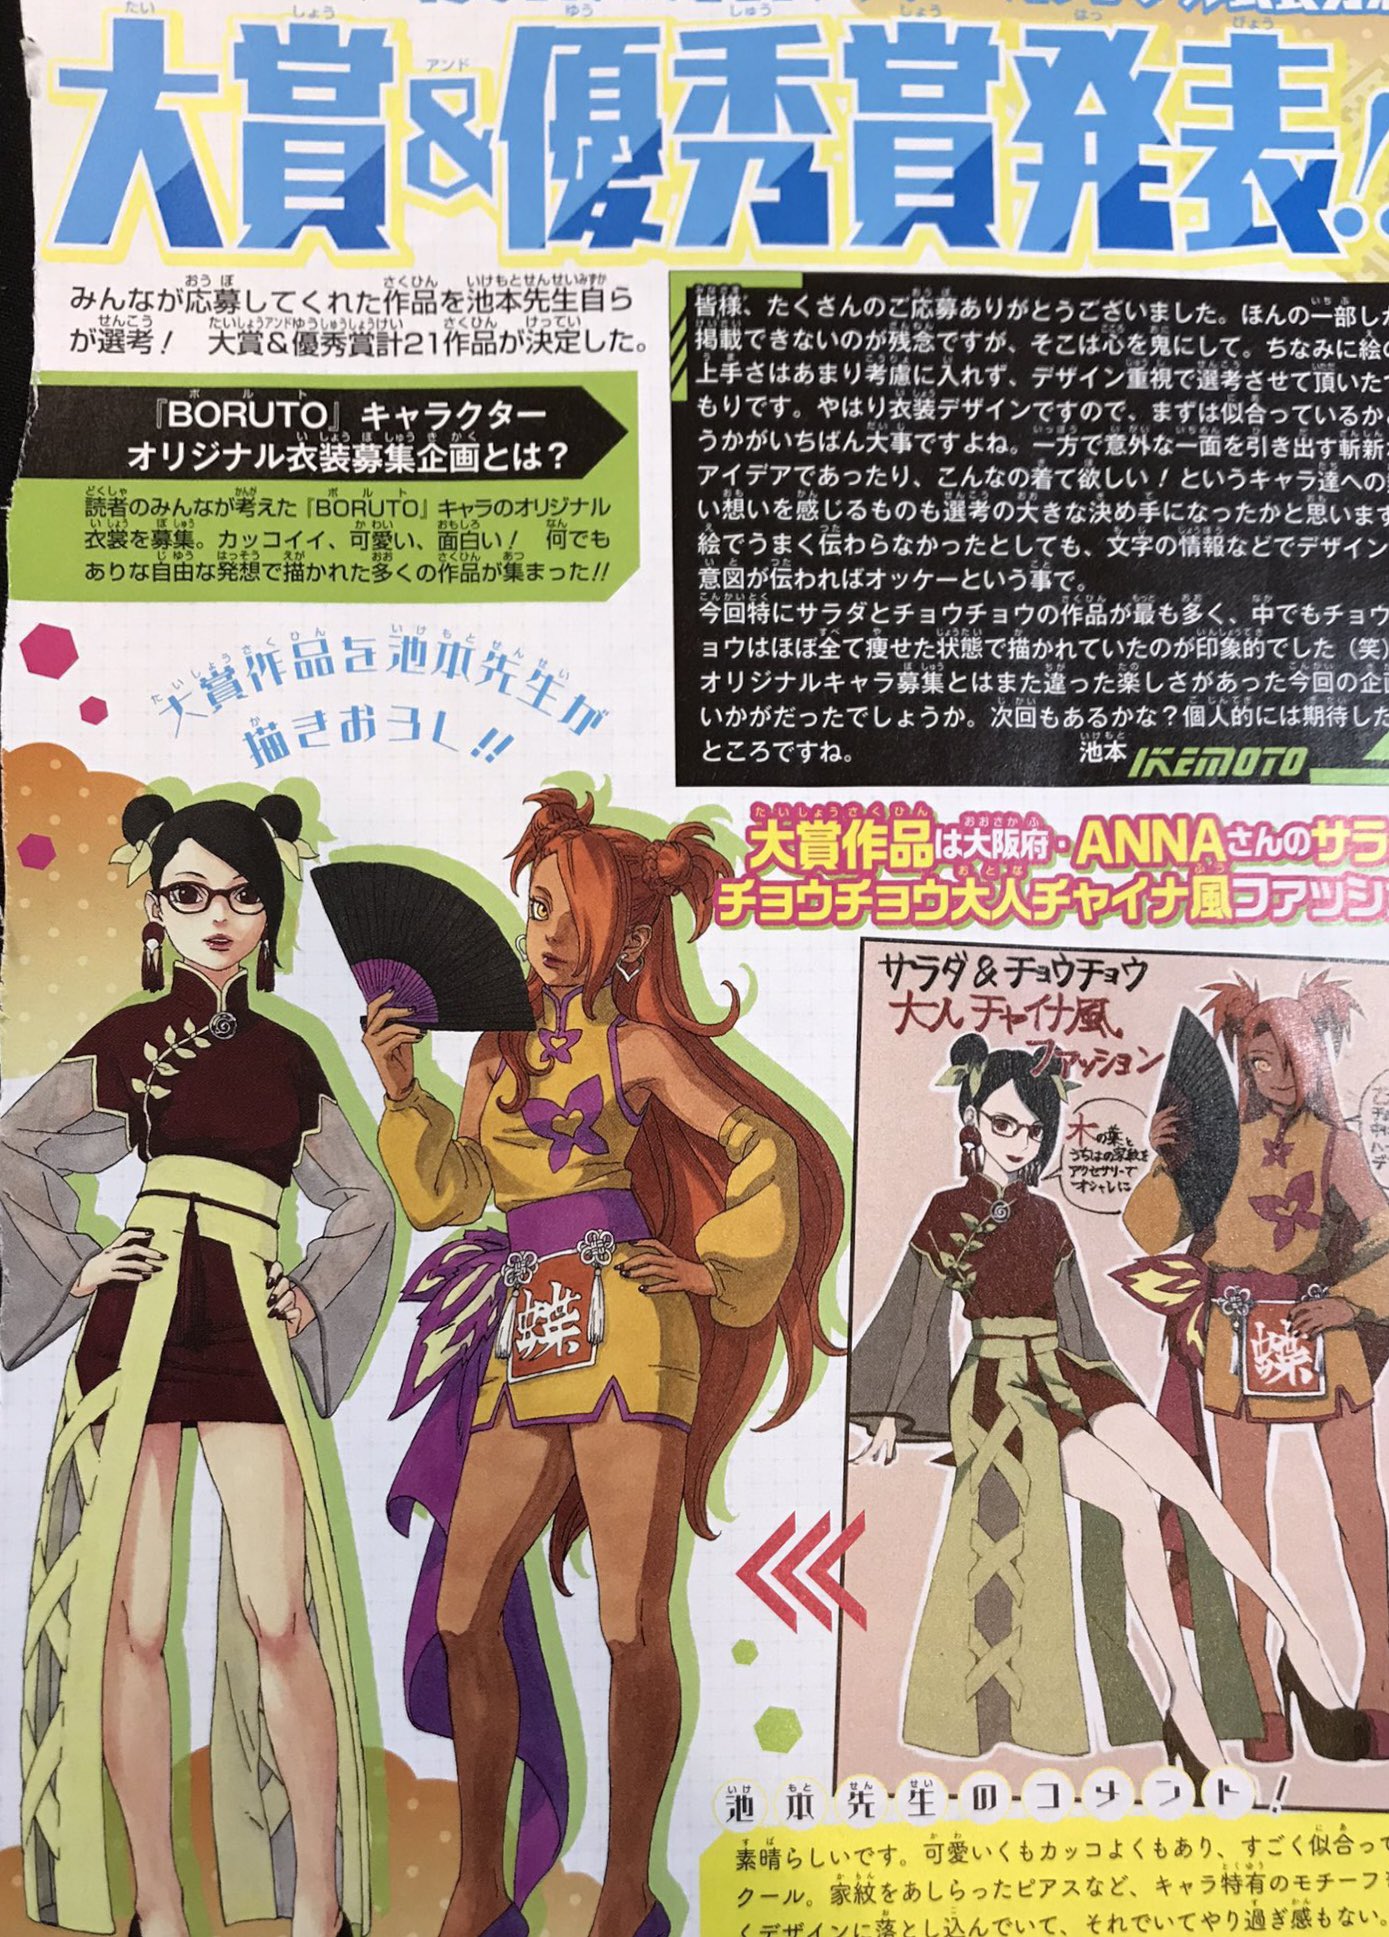 Sarada source on X: Em uma entrevista, no ano de 2018, Ikemoto falou um  pouco sobre seus planos para o design dos personagens no futuro. Ele disse  que o cabelo do Boruto